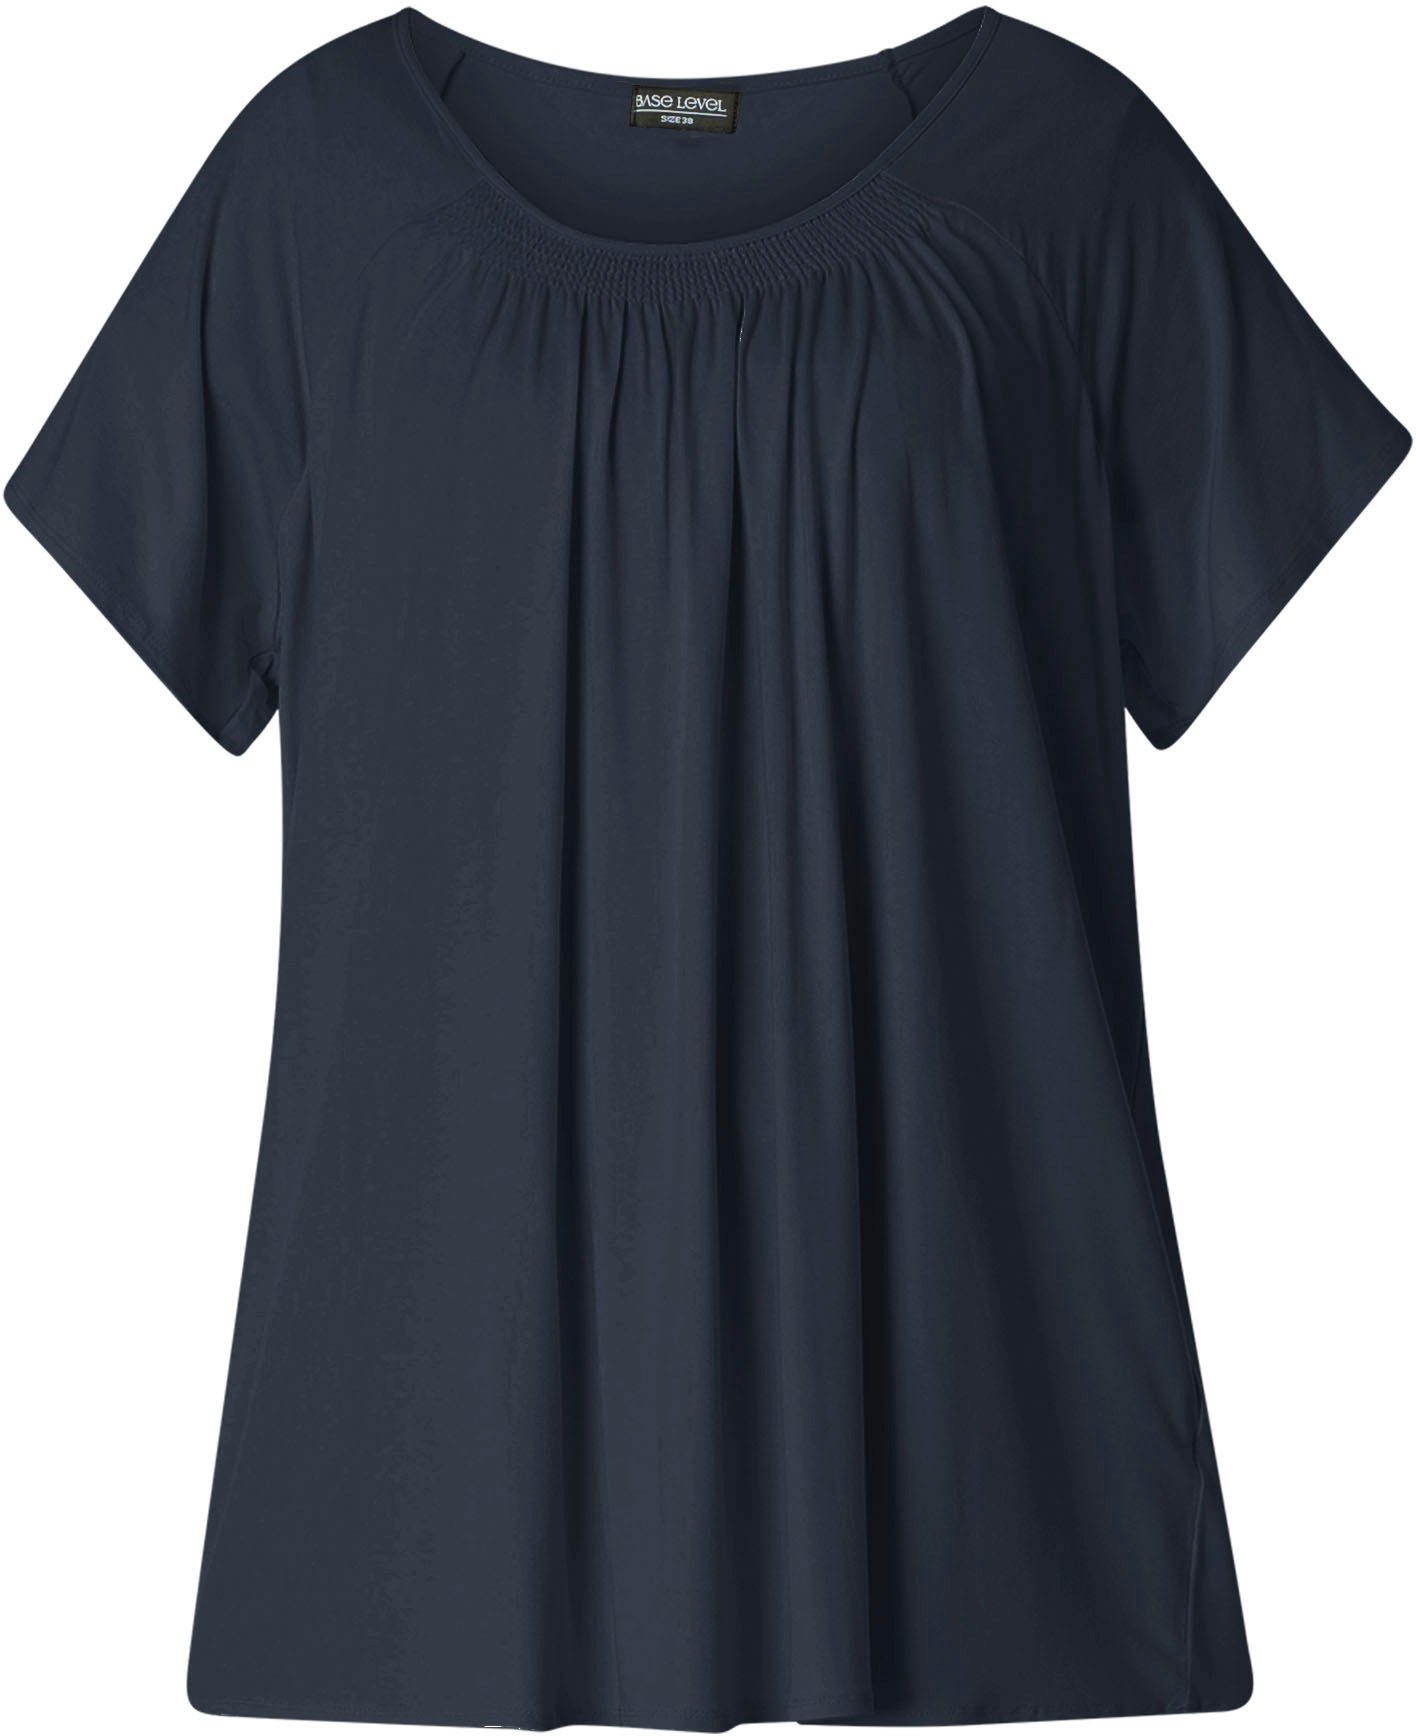 Yokia Curvy Baumwoll-Mischqualität navy T-Shirt In formstabiler Base blue dark Level